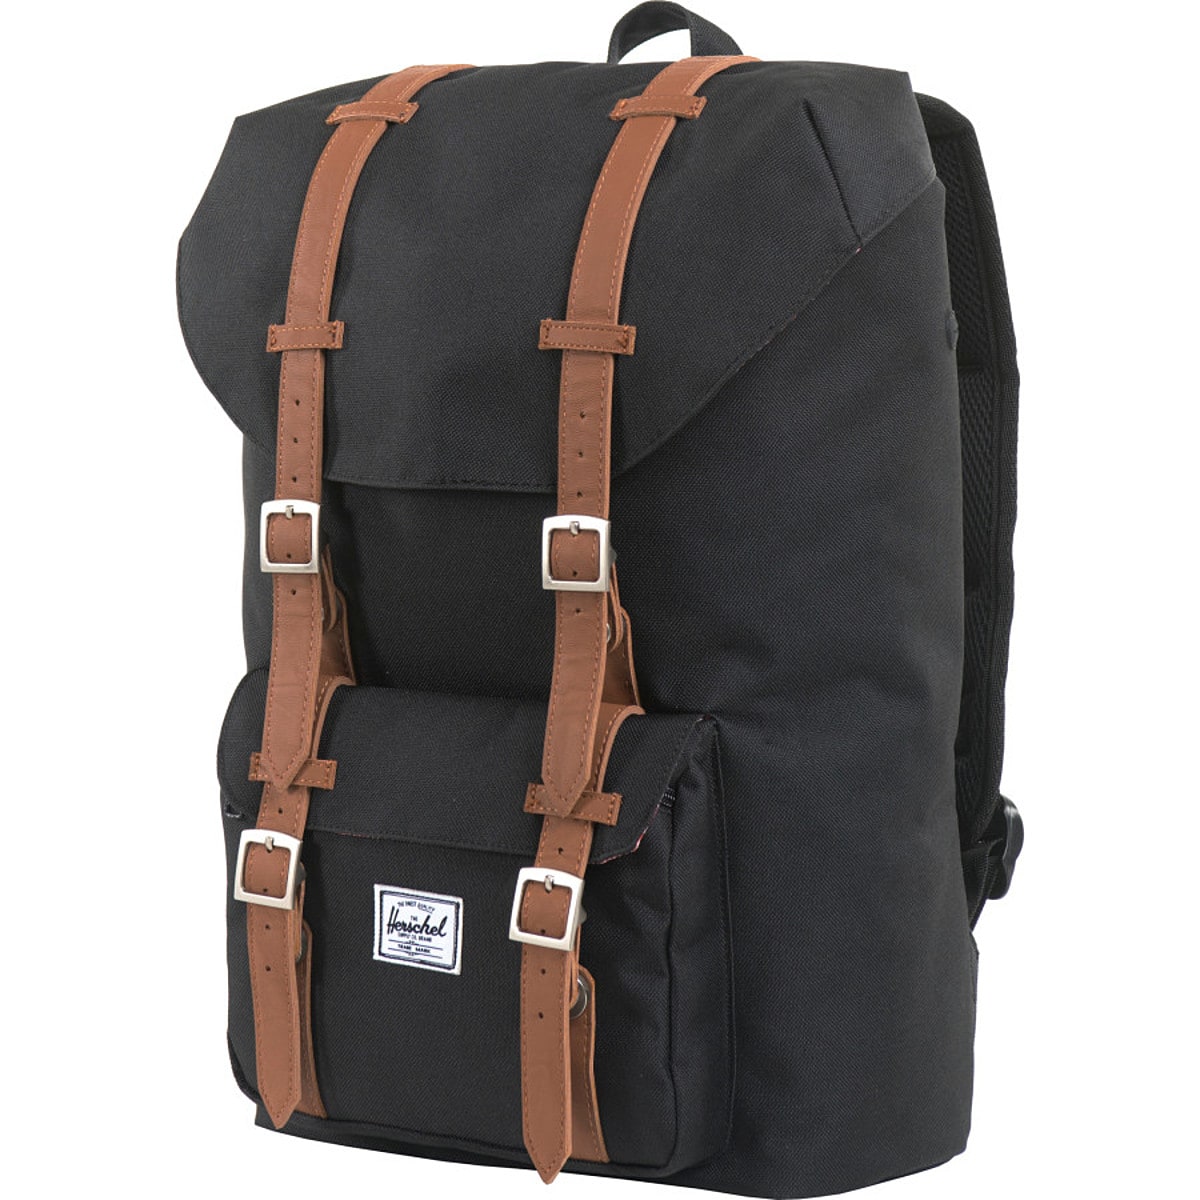 Рюкзак среднего объема little america объемом 17 л Herschel Supply, цвет black/tan synthetic leather